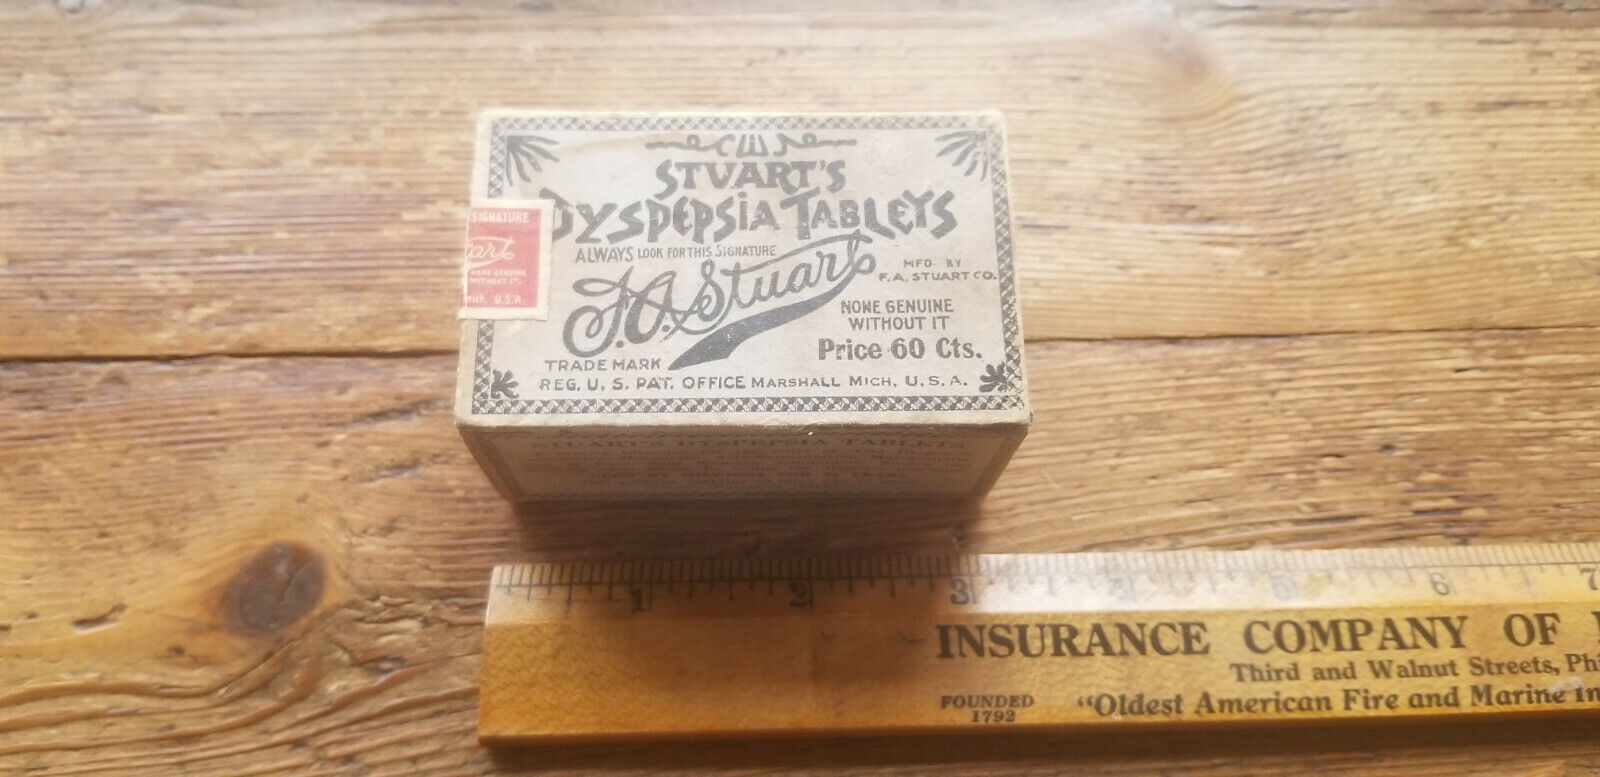 Rare Vintage Stvarts Dyspepsia Tablets Cardboard Box!